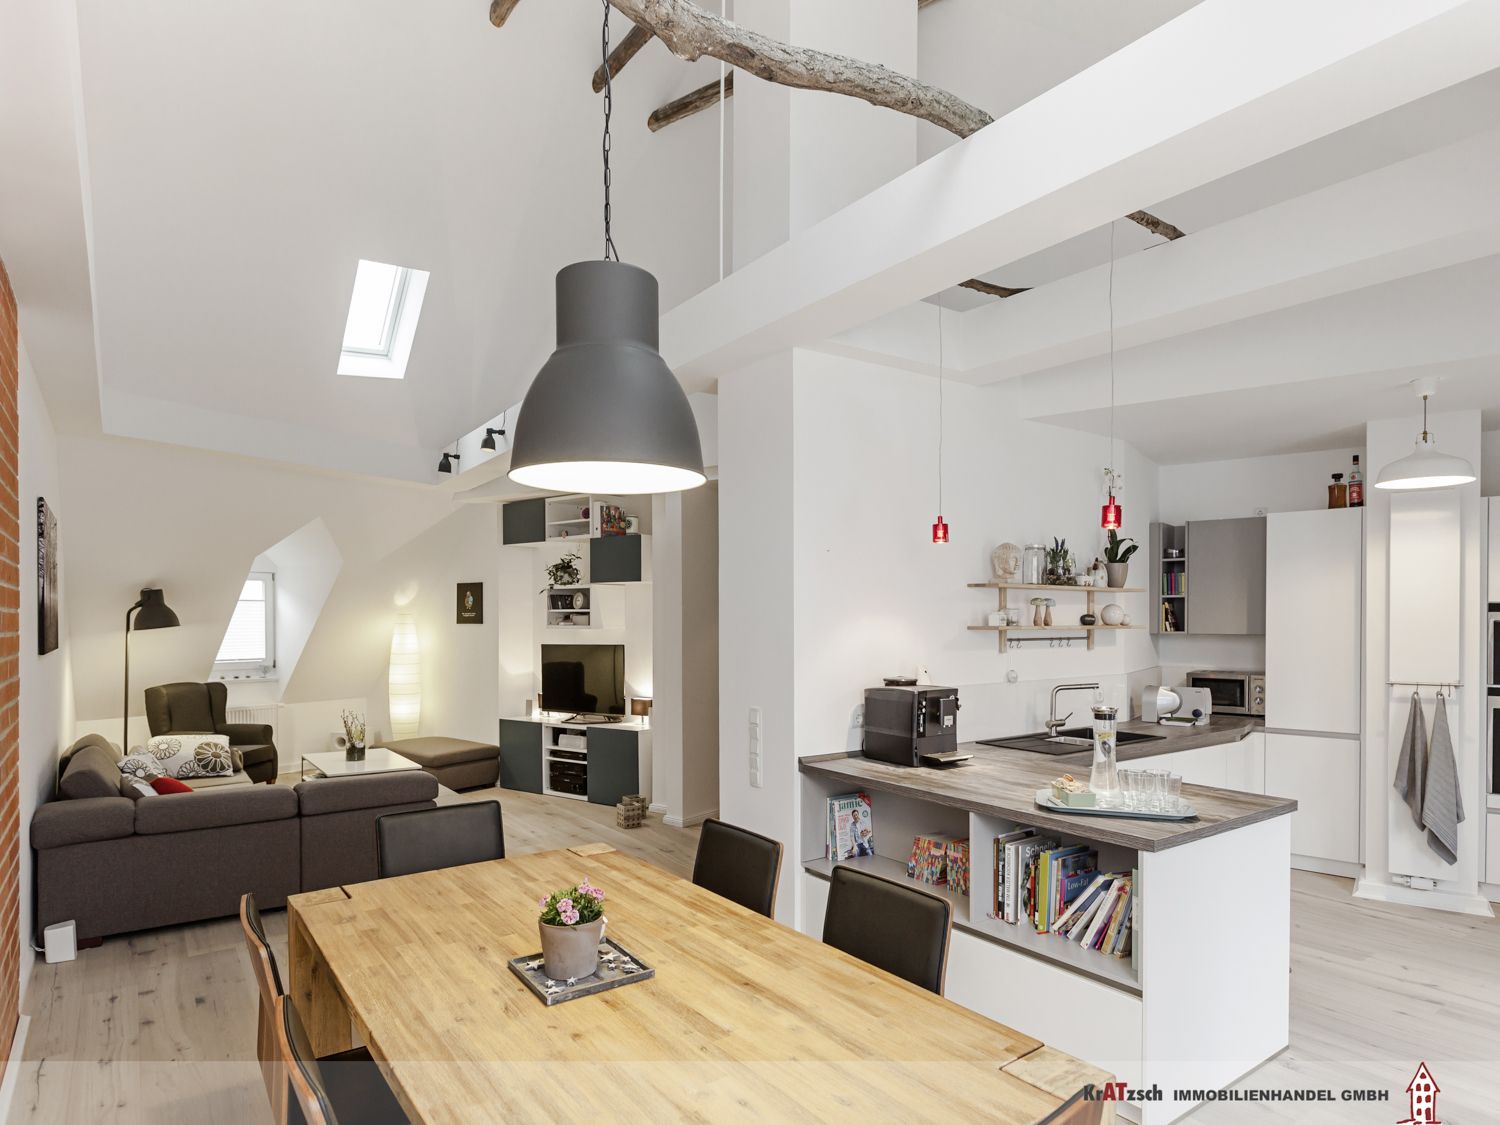 Zentraler Punkt dieser familienfreundlichen Wohnung ist der große, offene Raum mit Küche, Ess- und Wohnbereich. Der Raum ist in